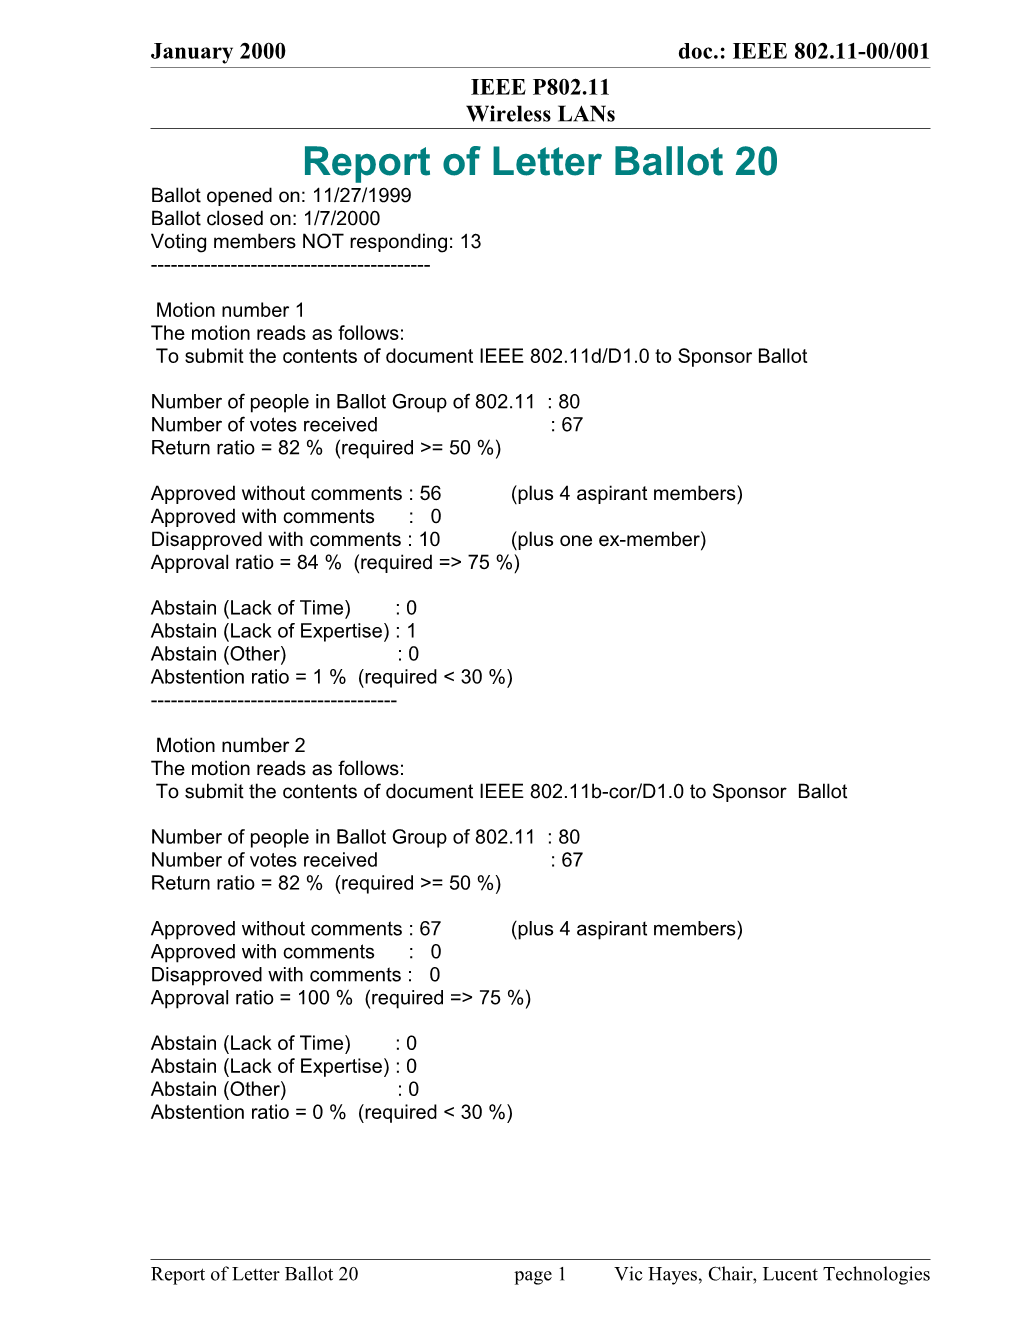 Report of Letter Ballot 20